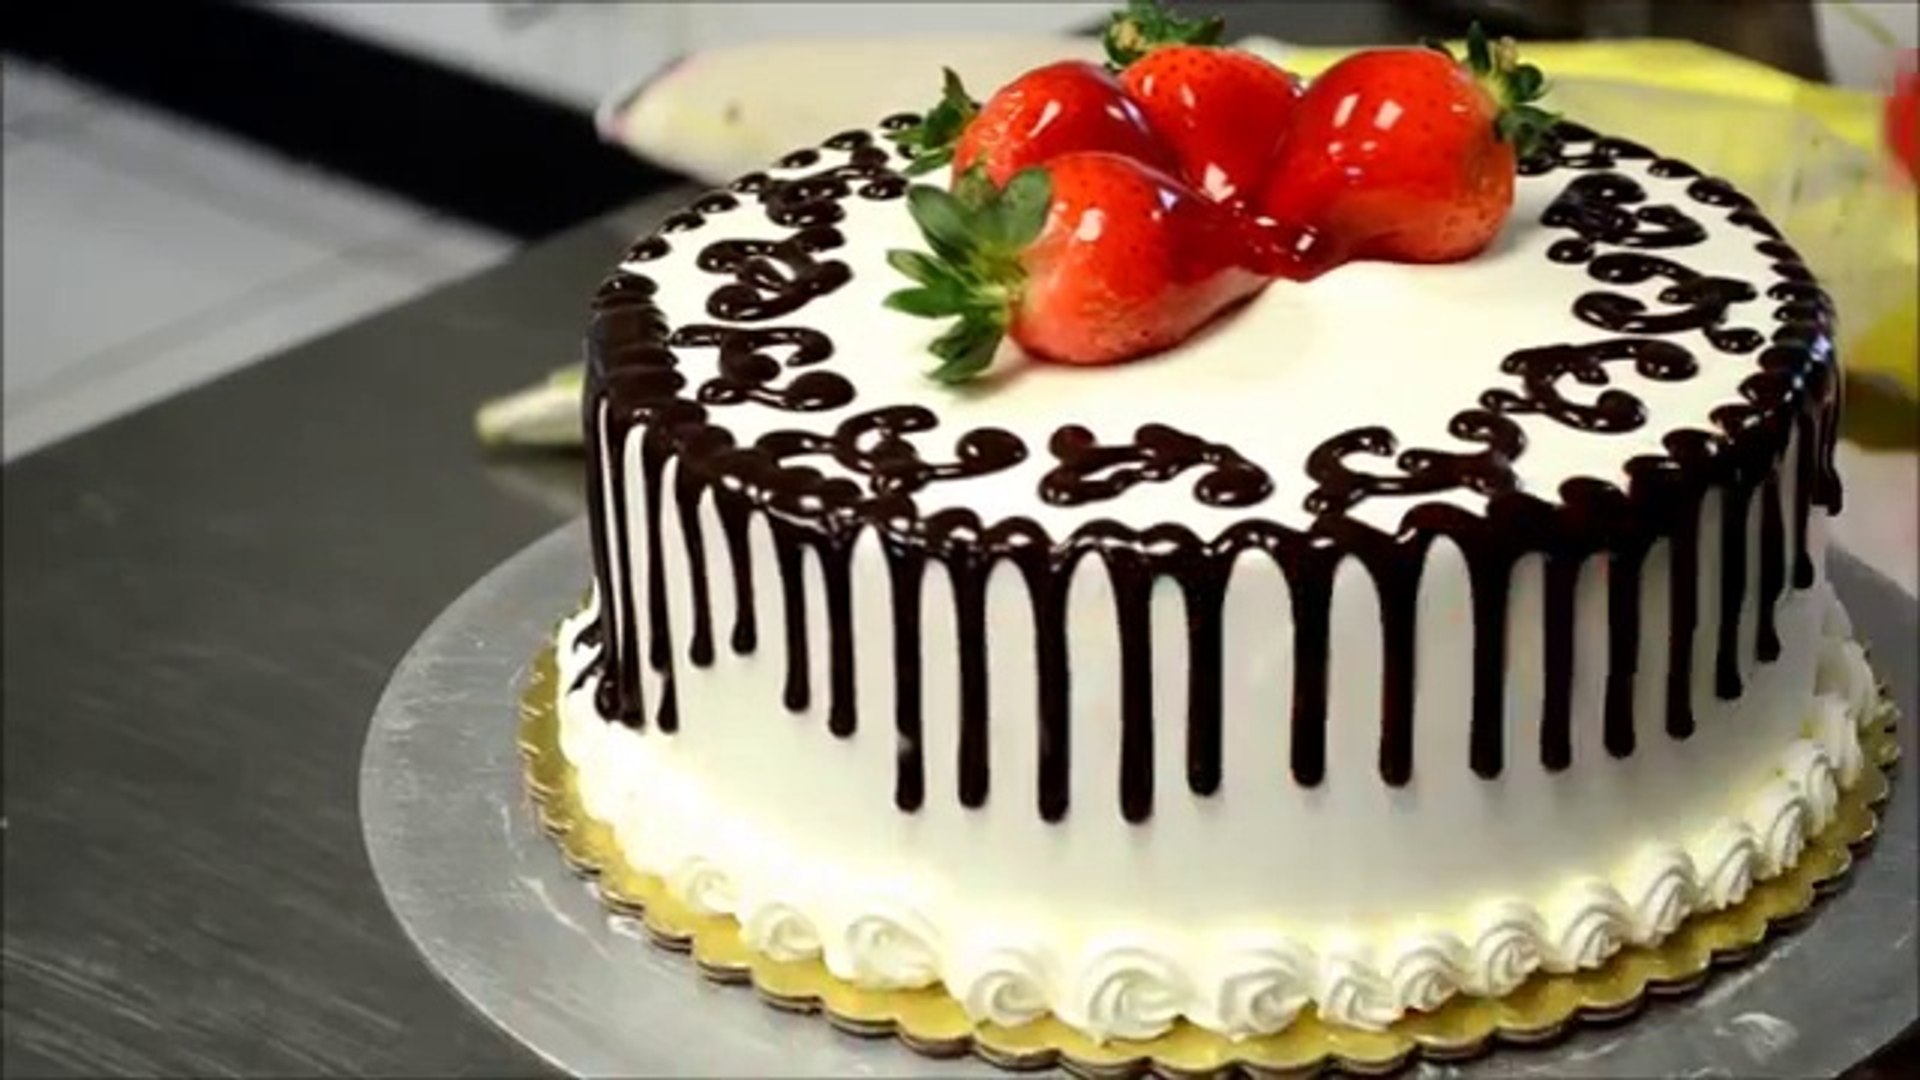 2 dakikada yaş pasta nasıl süslenir? - Dailymotion Video